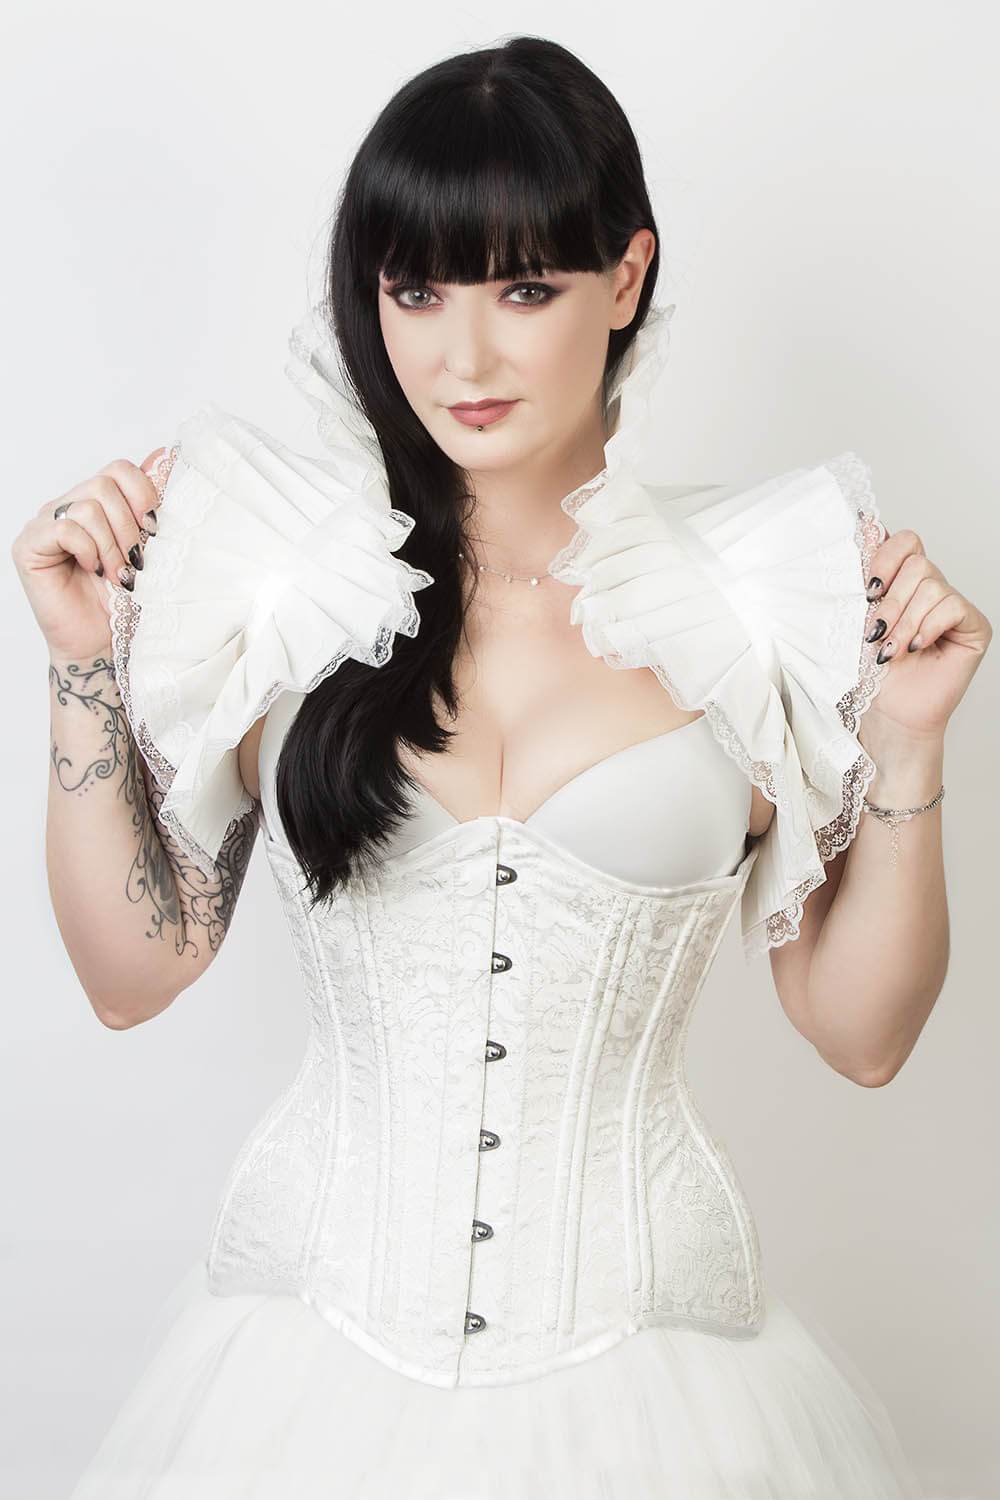 https://www.corsetdeal.com/cdn/shop/products/EL-157_F_Elyzza_London_Corset_Corsetdeal_Bespoke_Corset_waist_training_corset.jpg?v=1554712112